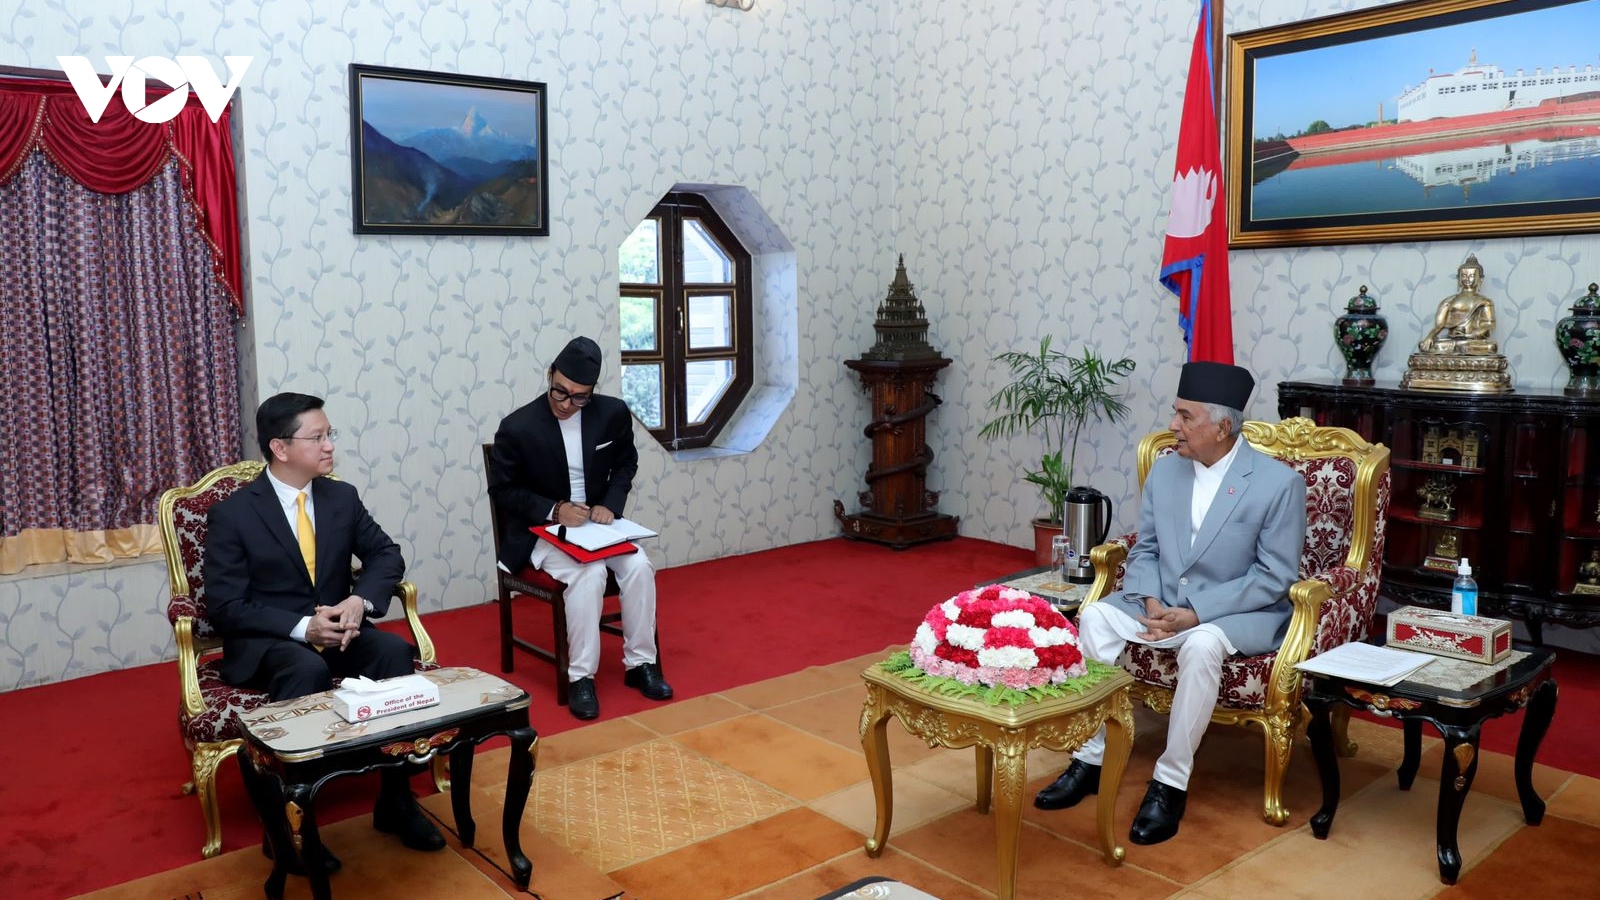 Đại sứ Nguyễn Thanh Hải trình Thư ủy nhiệm lên Tổng thống Nepal